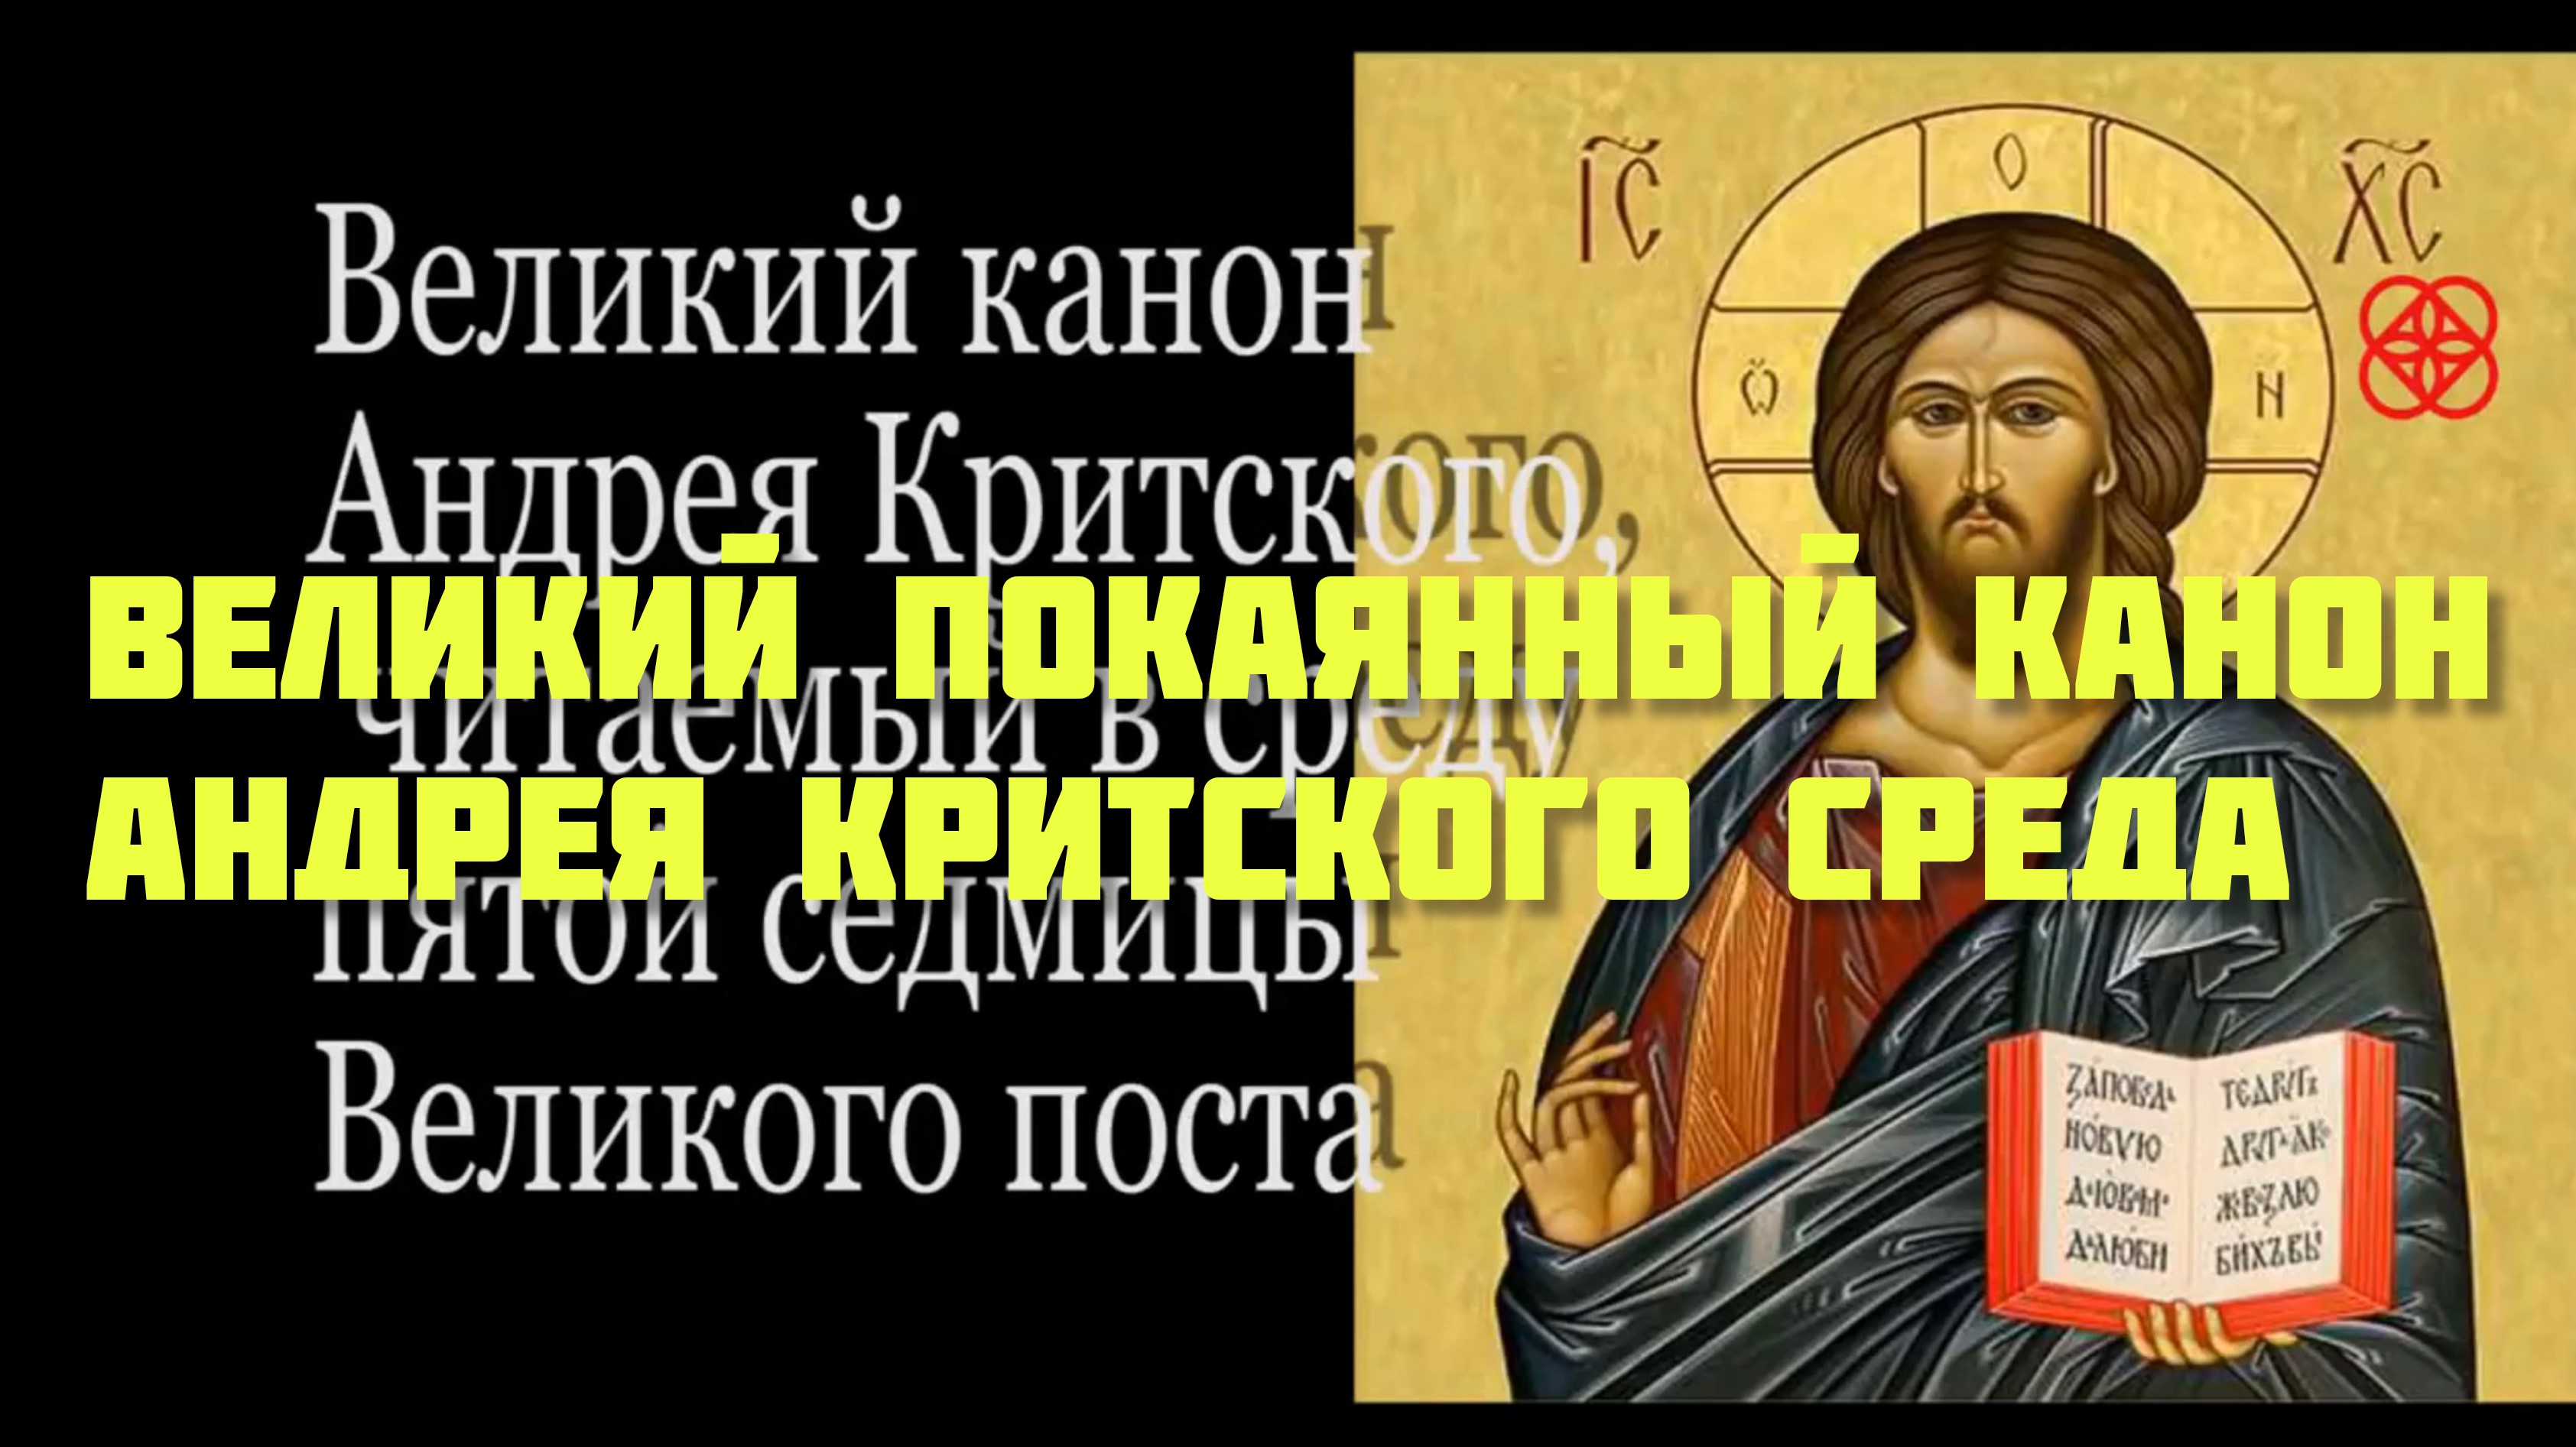 Канон андрея критского вторник перевод на русский